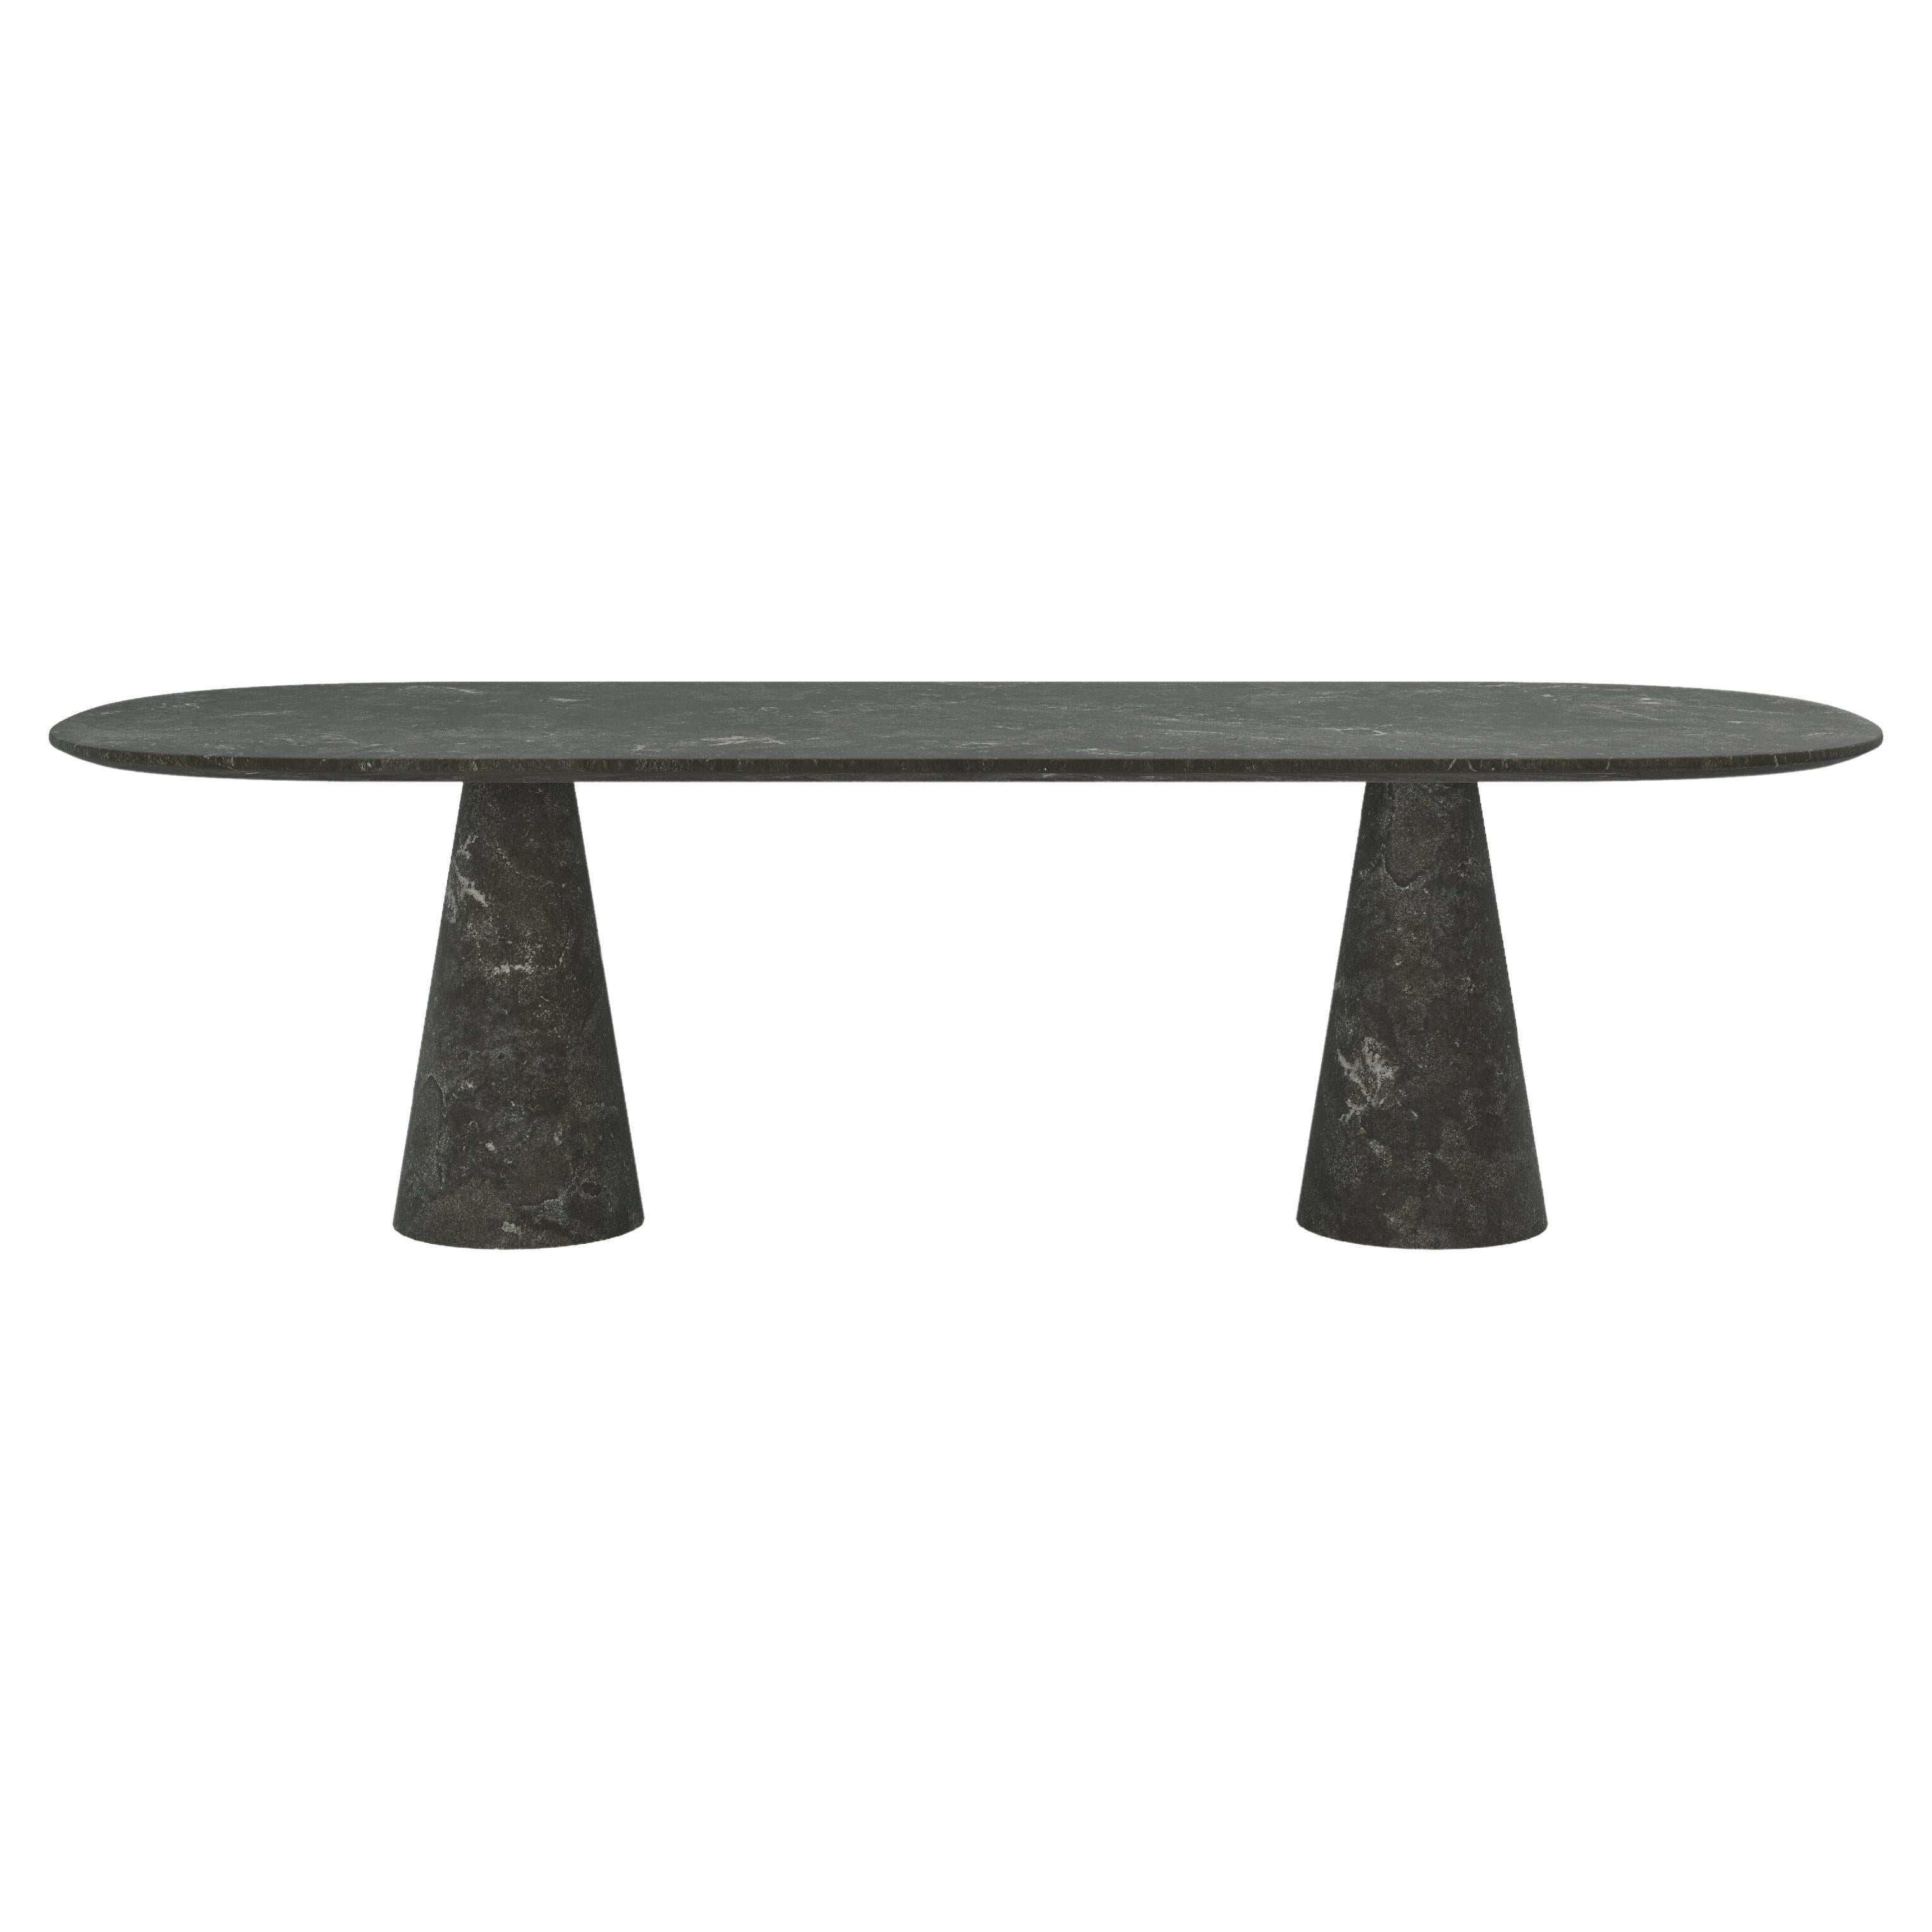 FORM(LA) Cono Oval Dining Table 108”L x 48”W x 30”H Nero Petite Granite